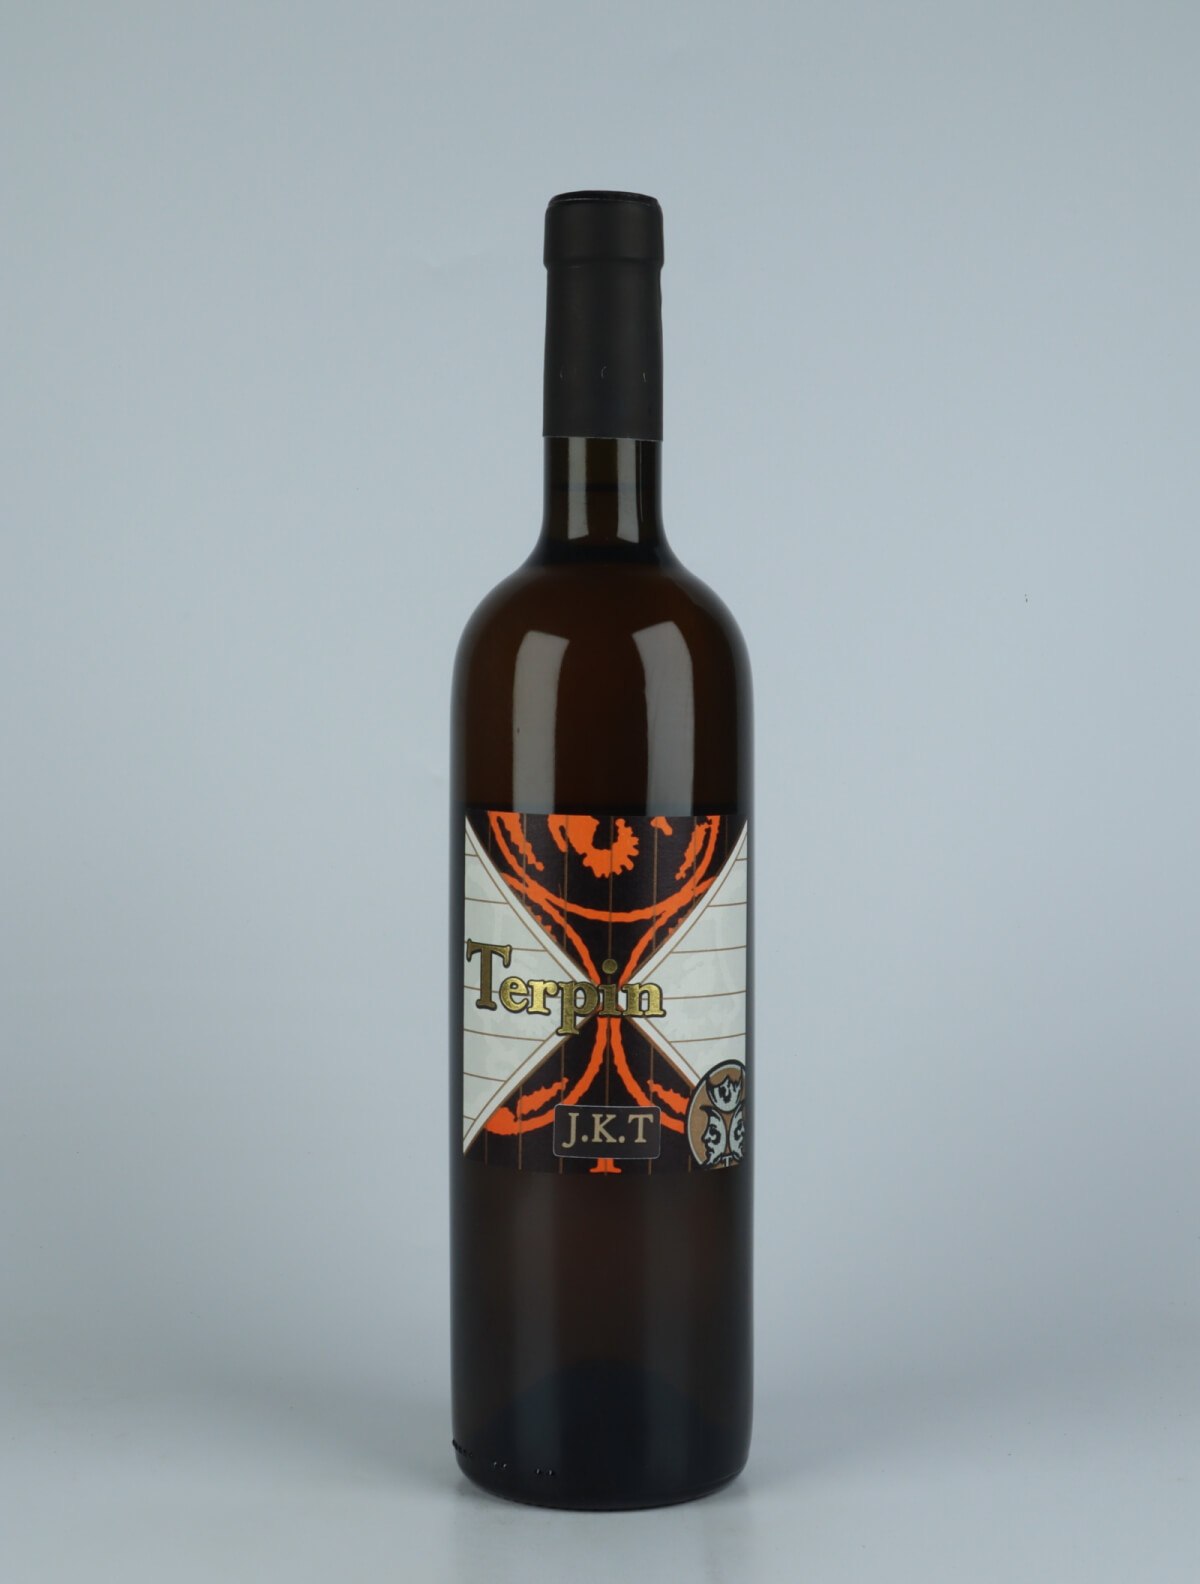 A bottle 2018 Jakot Orange wine from Franco Terpin, Friuli in Italy